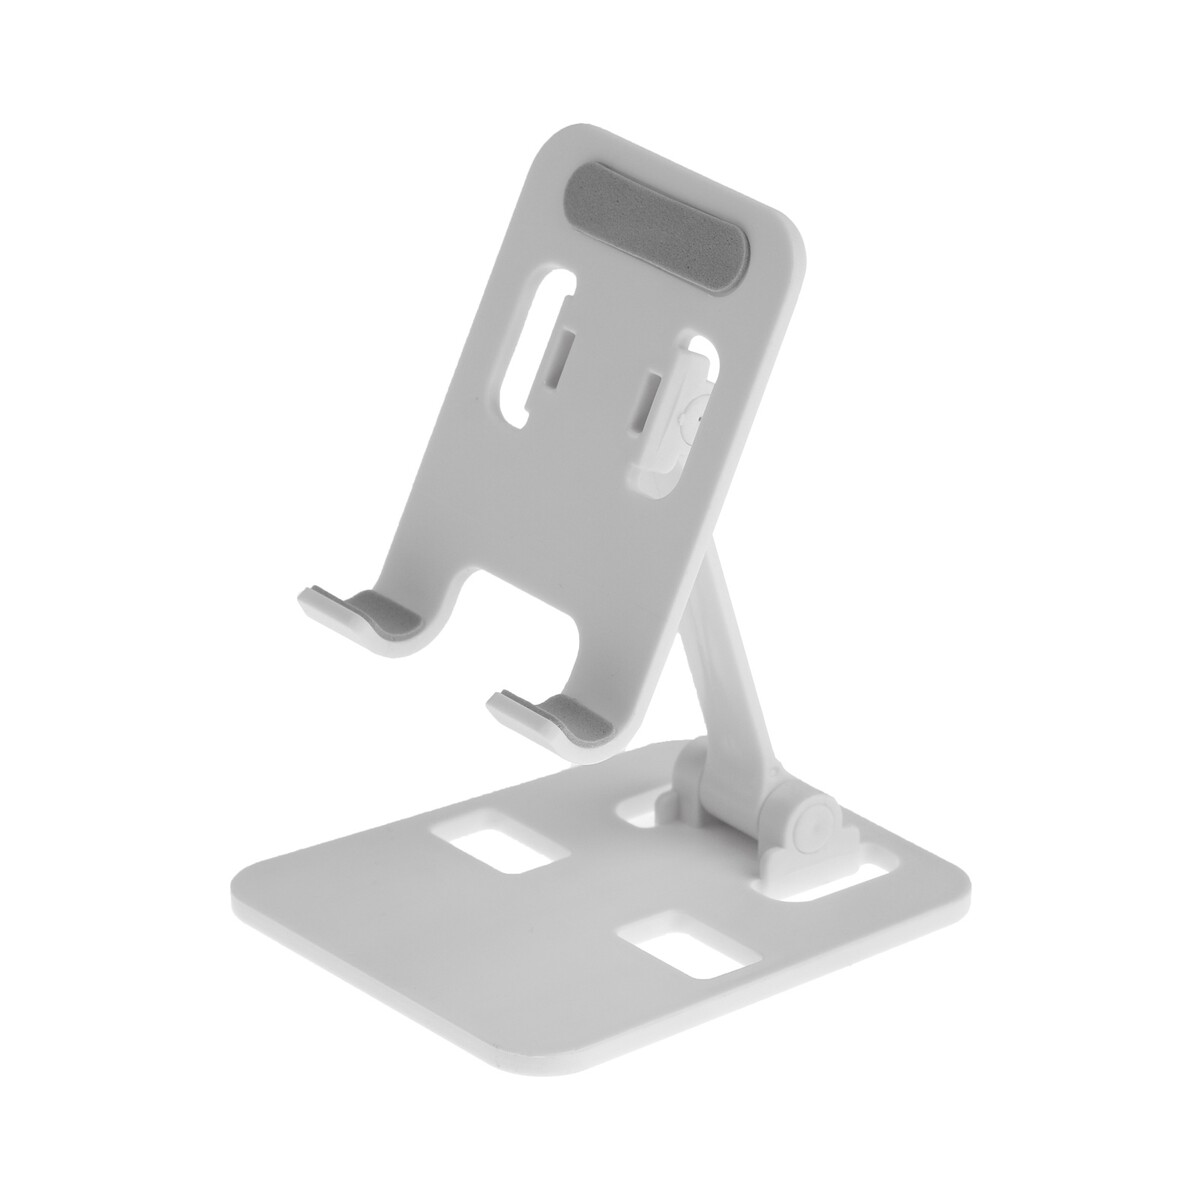 Подставка для телефона luazon, складная, регулируемая, резиновые вставки, белая подставка для телефона регулируемая складная поворот на 360° металл серебристая